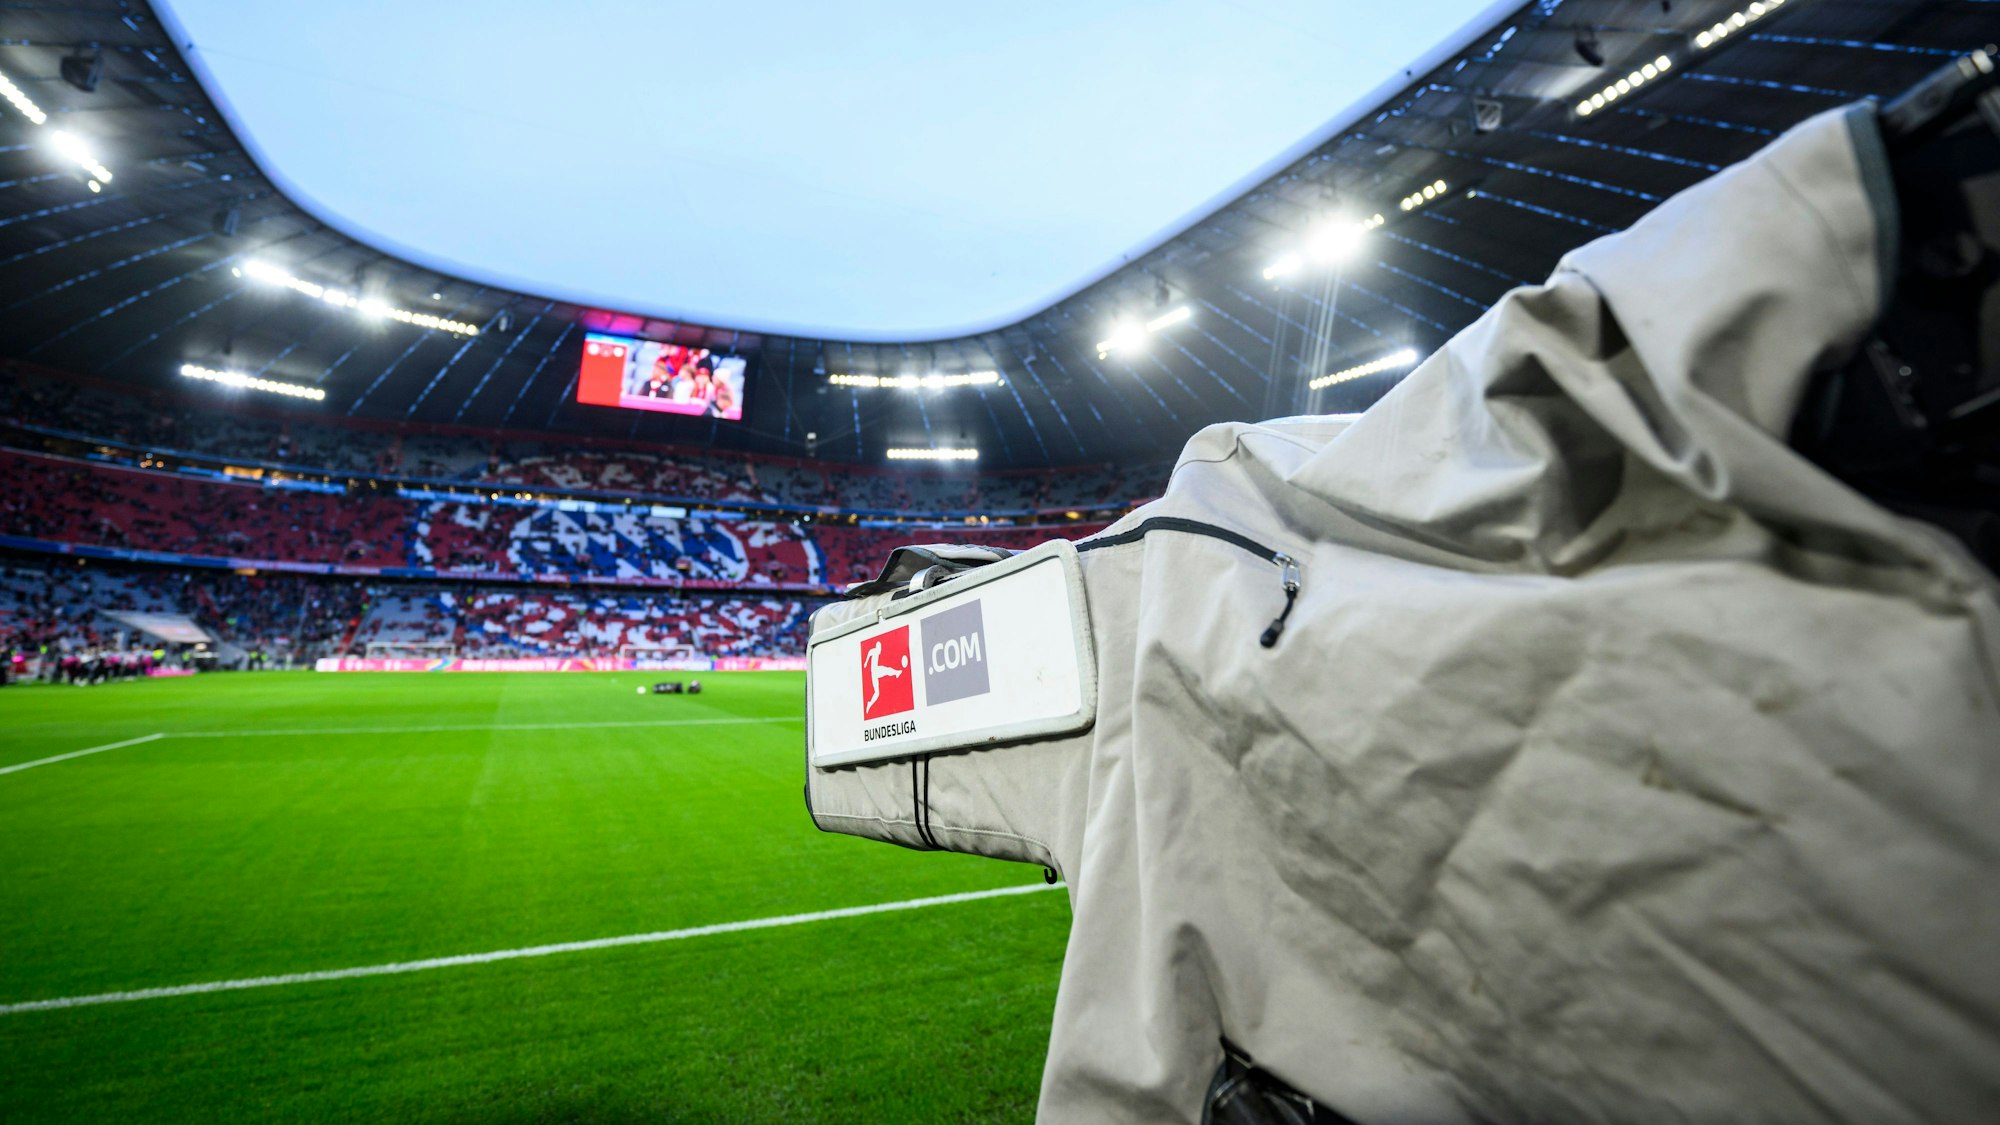 Eine TV-Kamera steht vor dem Spiel im Stadion.